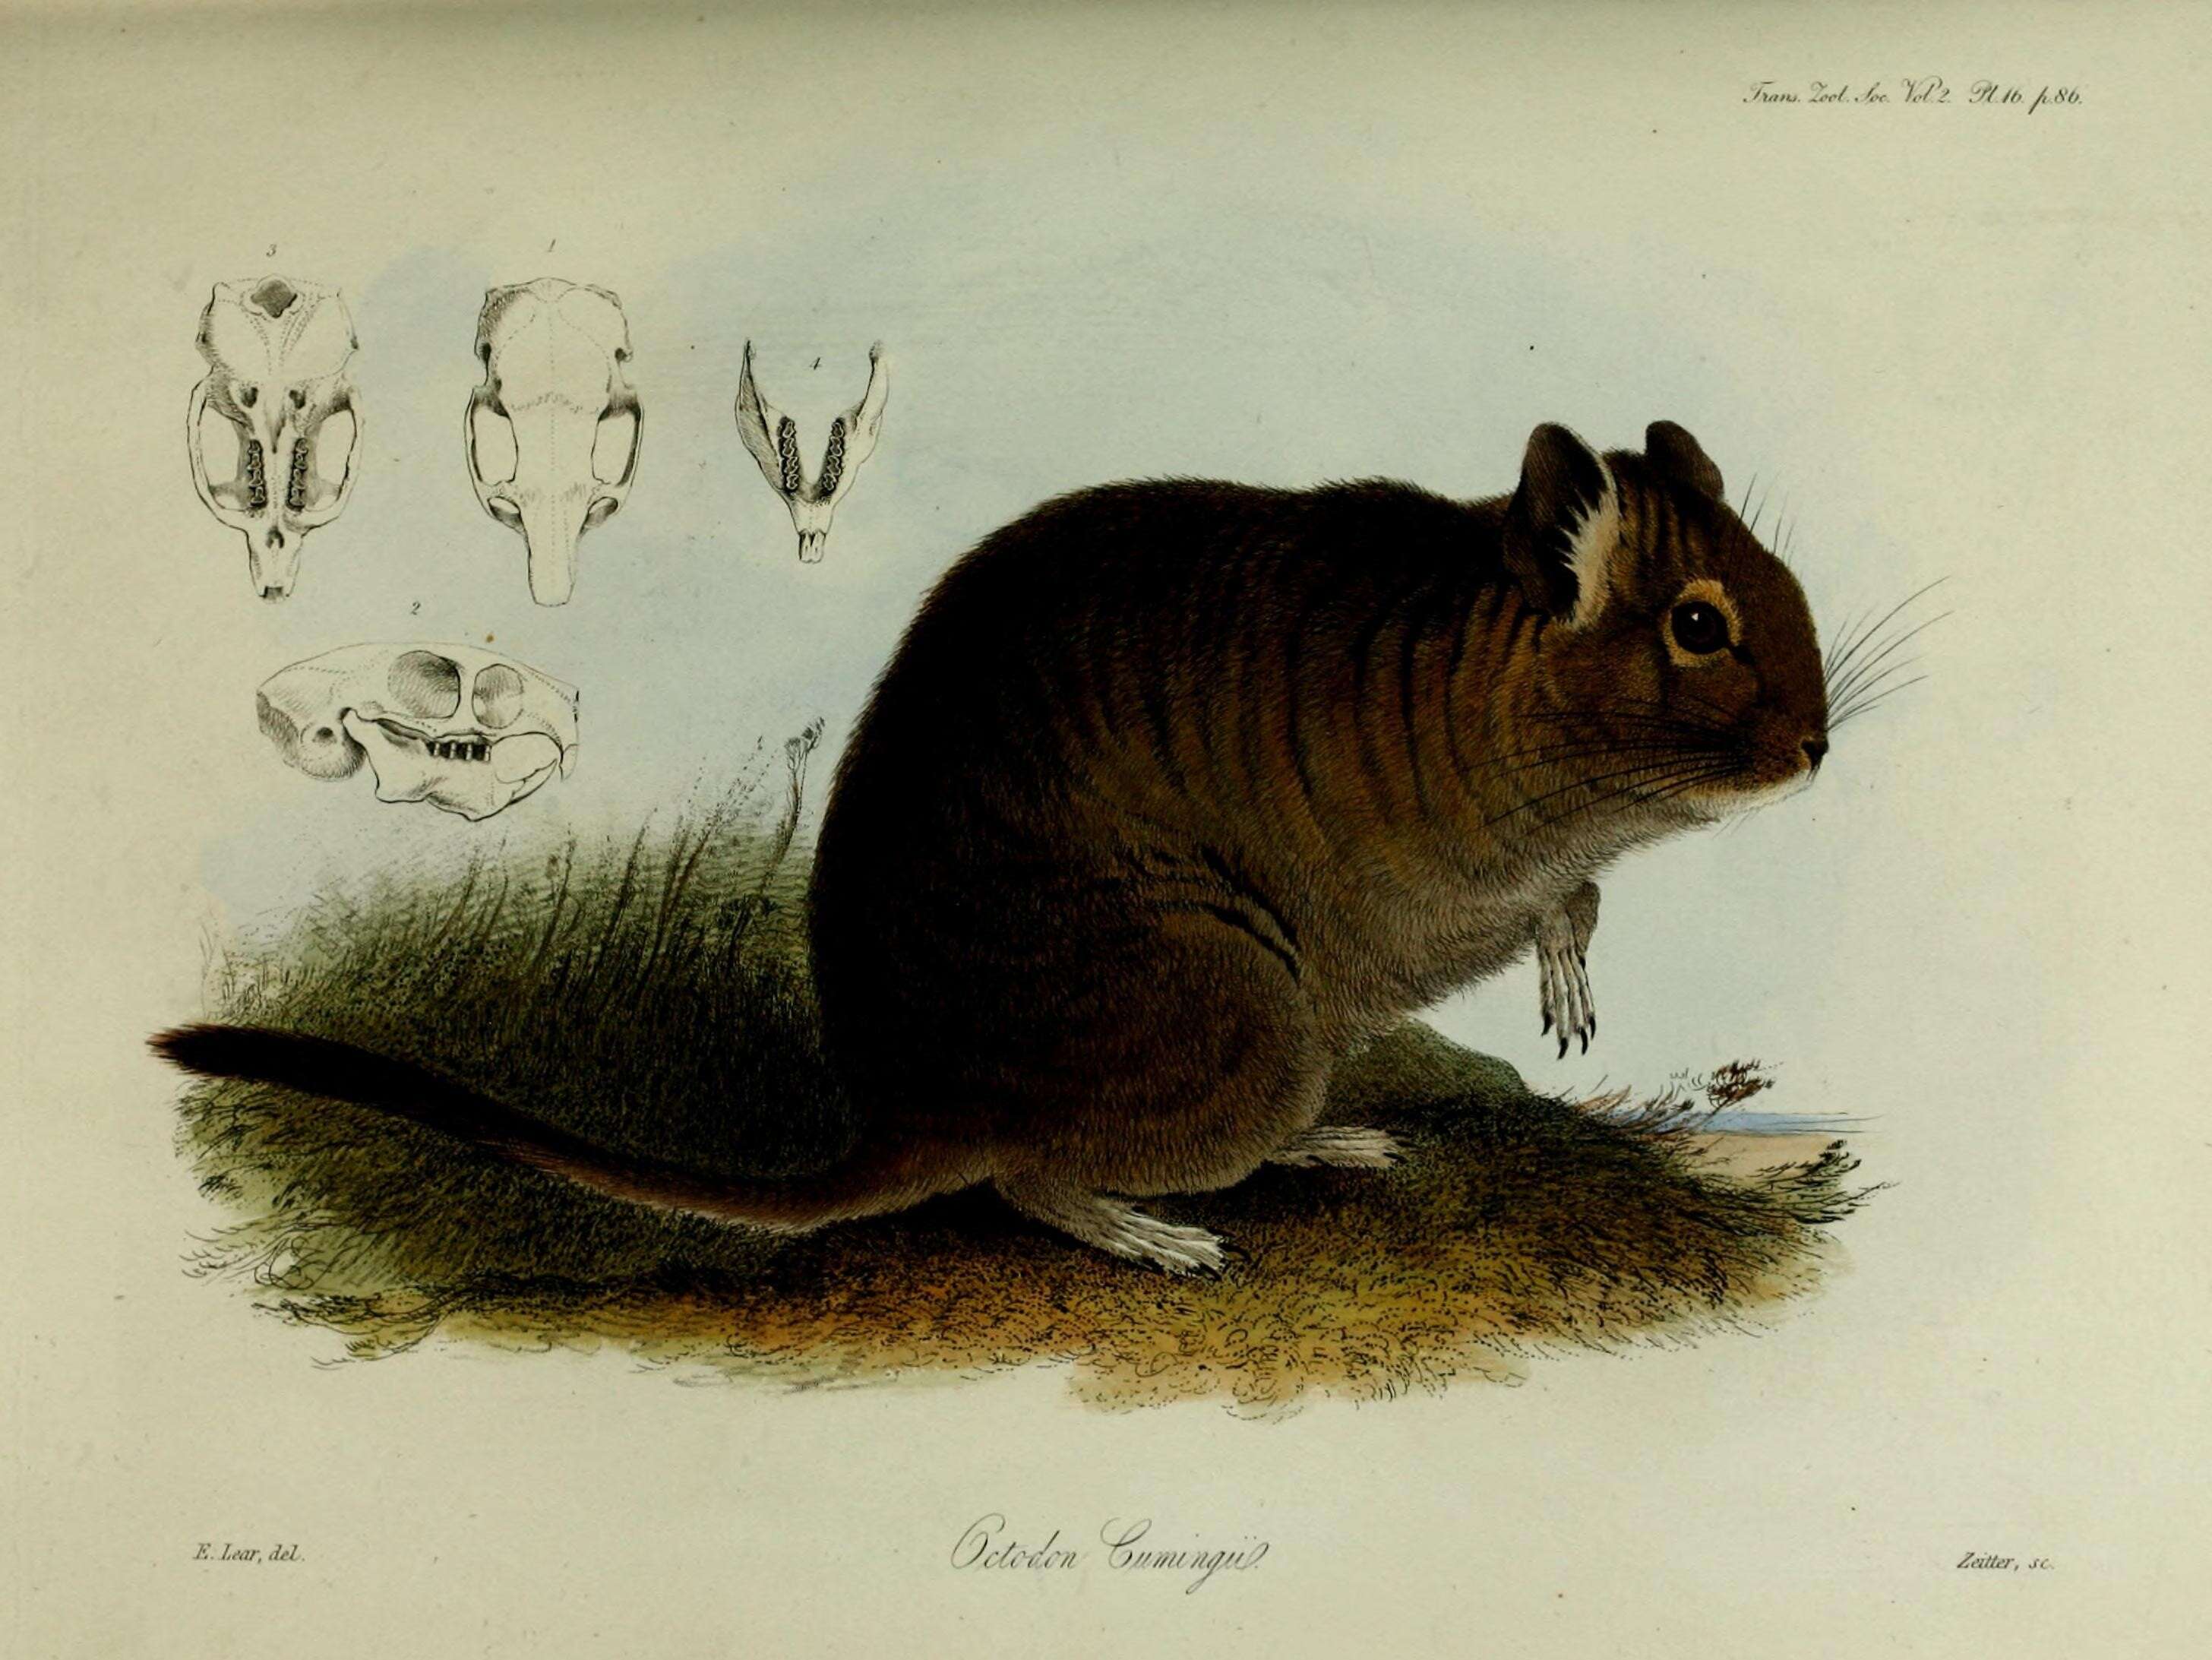 Sivun Octodon Bennett 1832 kuva